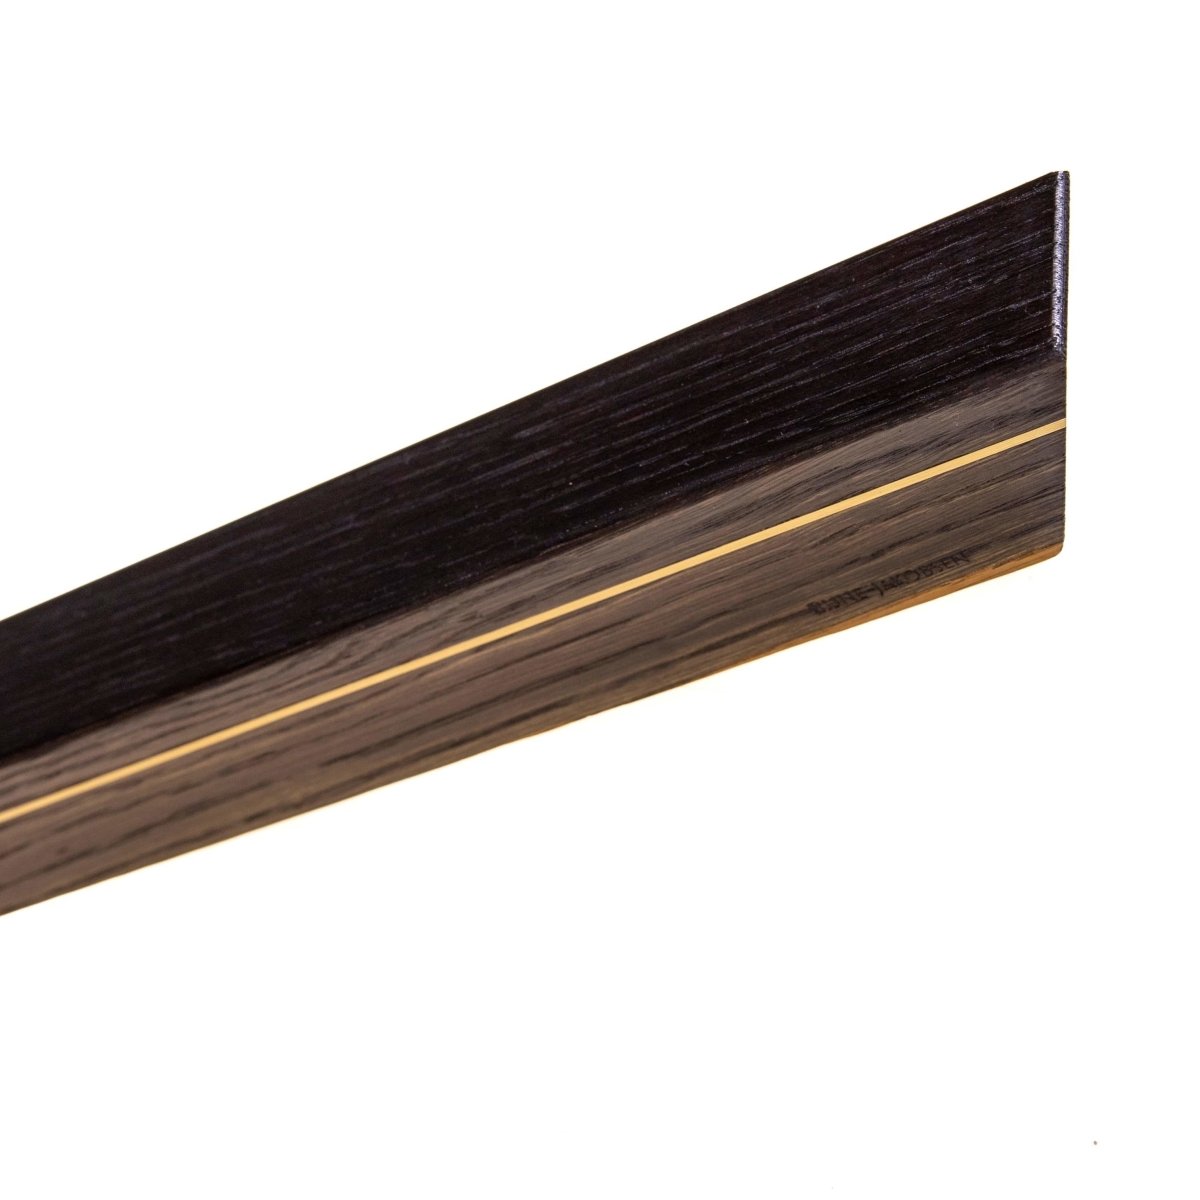 Rune-Jakobsen Woodworks 'Knifeboard Exclusive' dyb knivmagnet_6 by Rune-Jakobsen Design